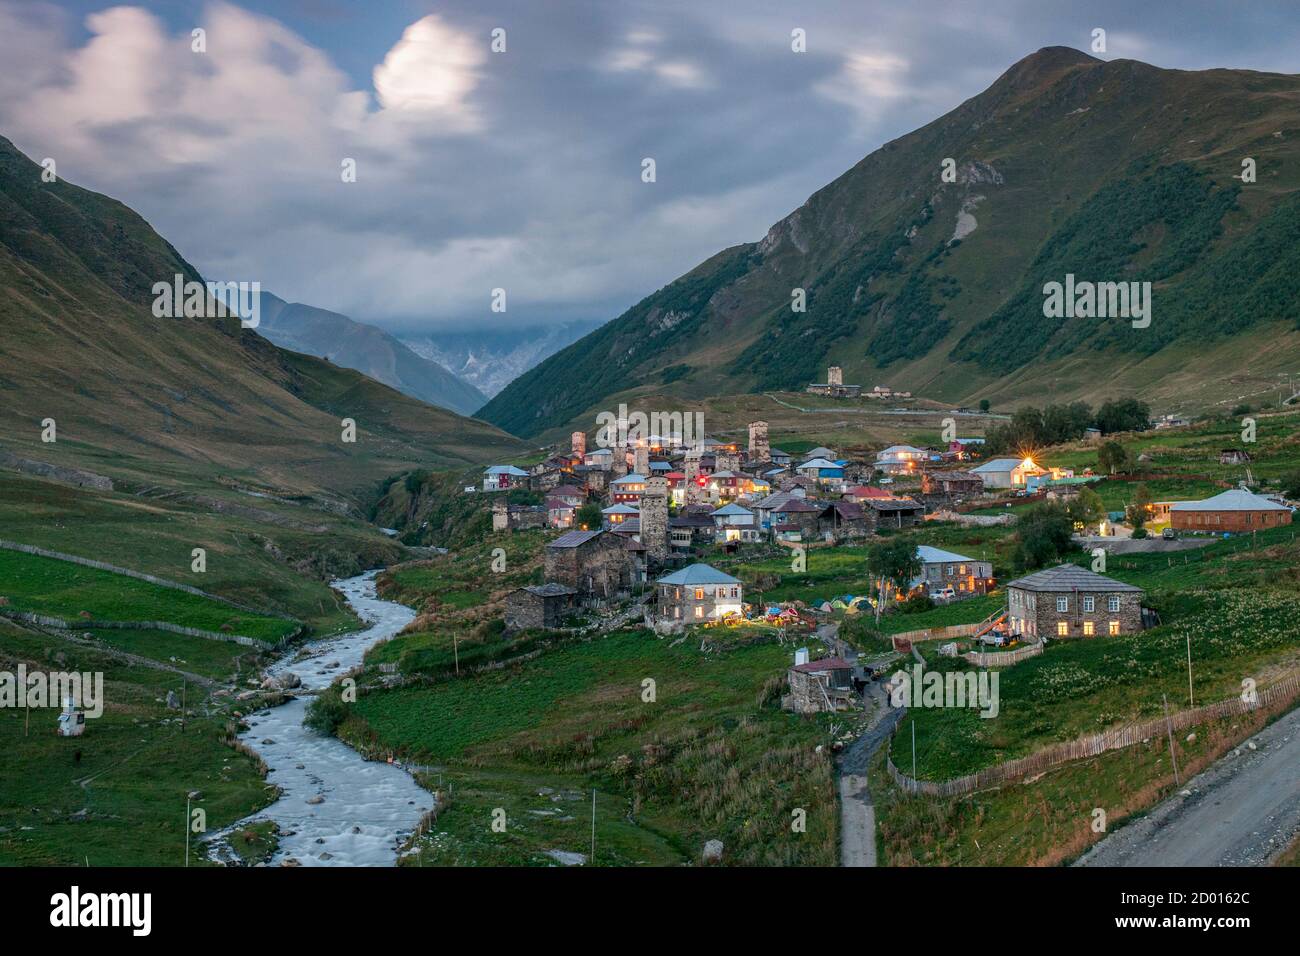 Vista al crepuscolo di Zhibiani e Chvibiani, due delle quattro frazioni che comprendono la comunità di Ushguli nel distretto di Svaneti, Monti del Caucaso, Georgia settentrionale. Foto Stock